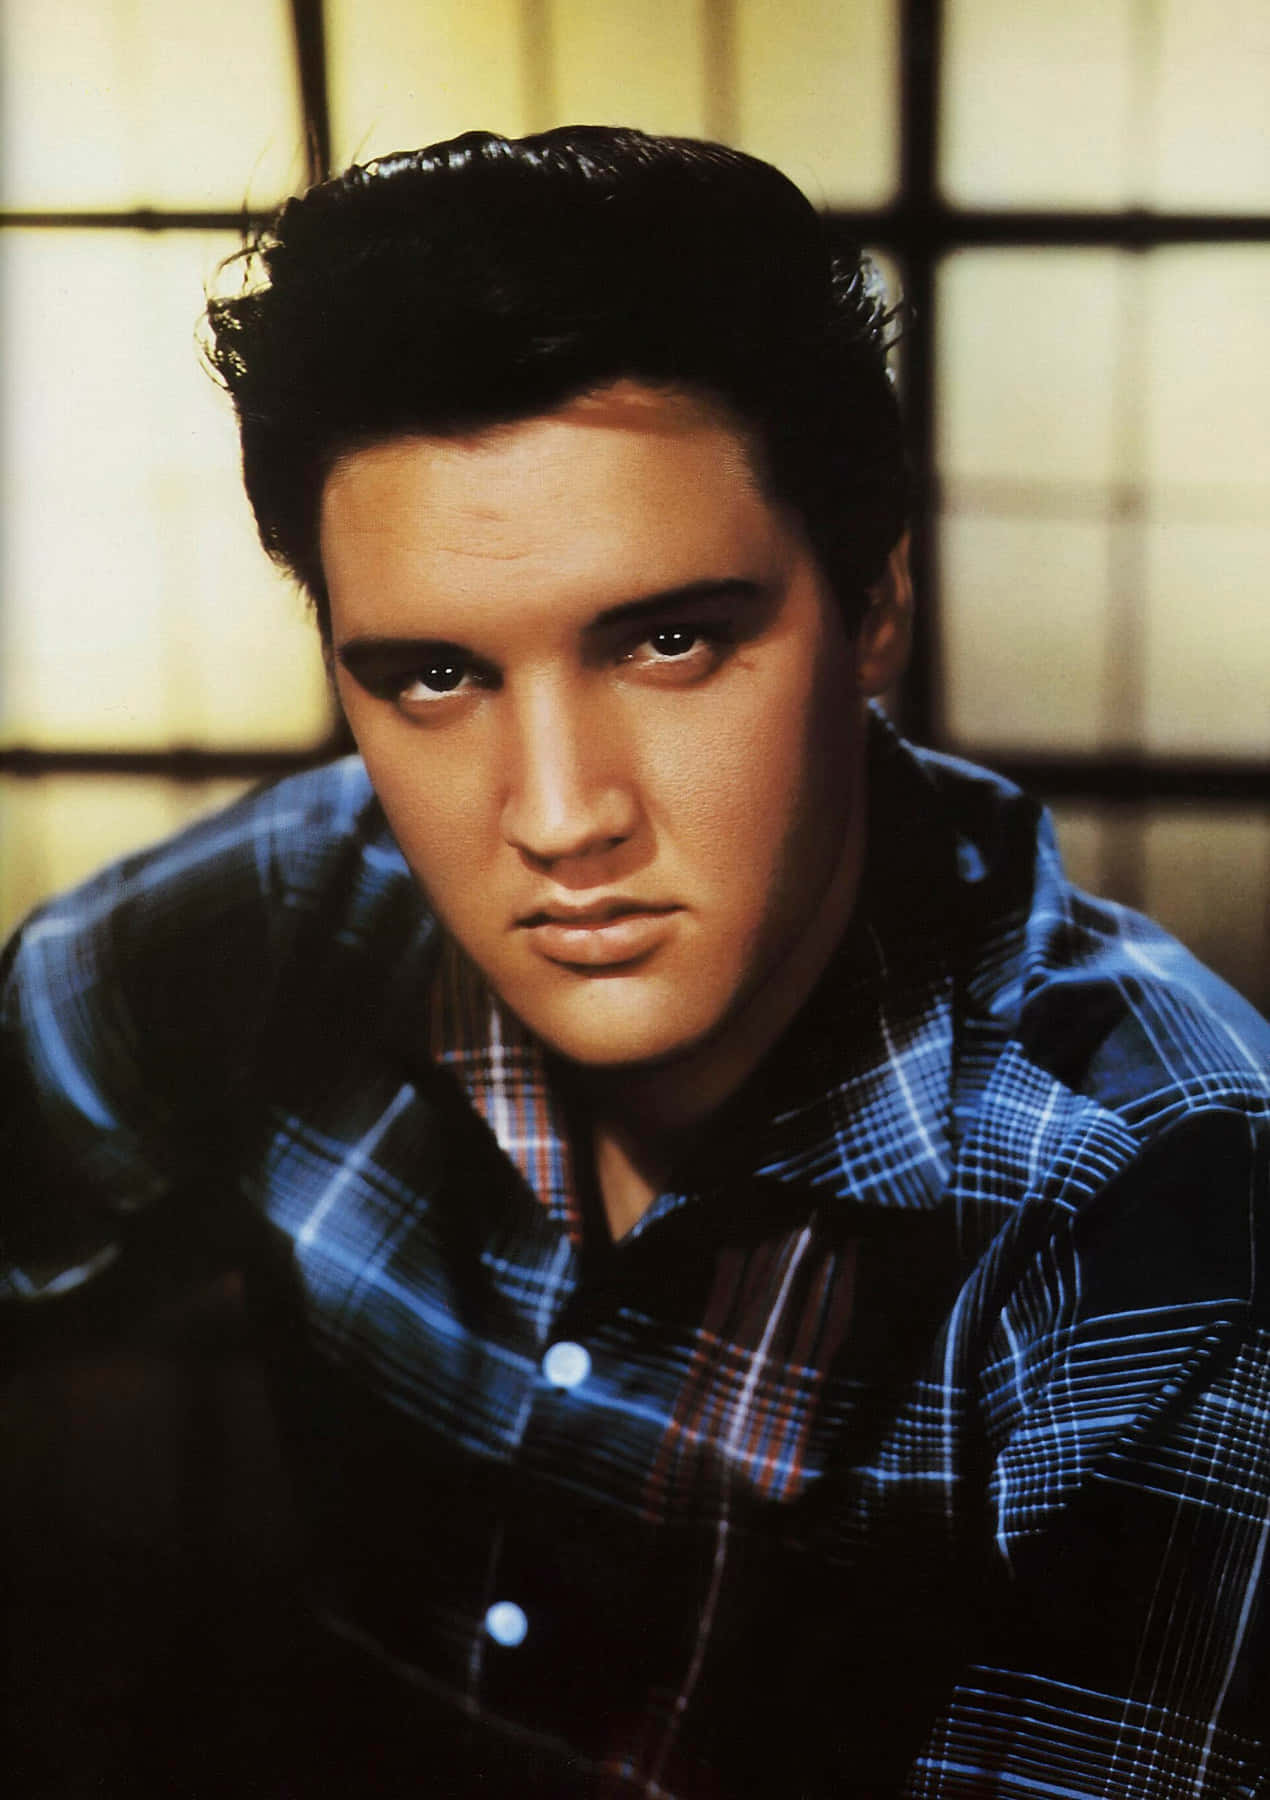 Image  Honoring Elvis Presley - The King of Rock